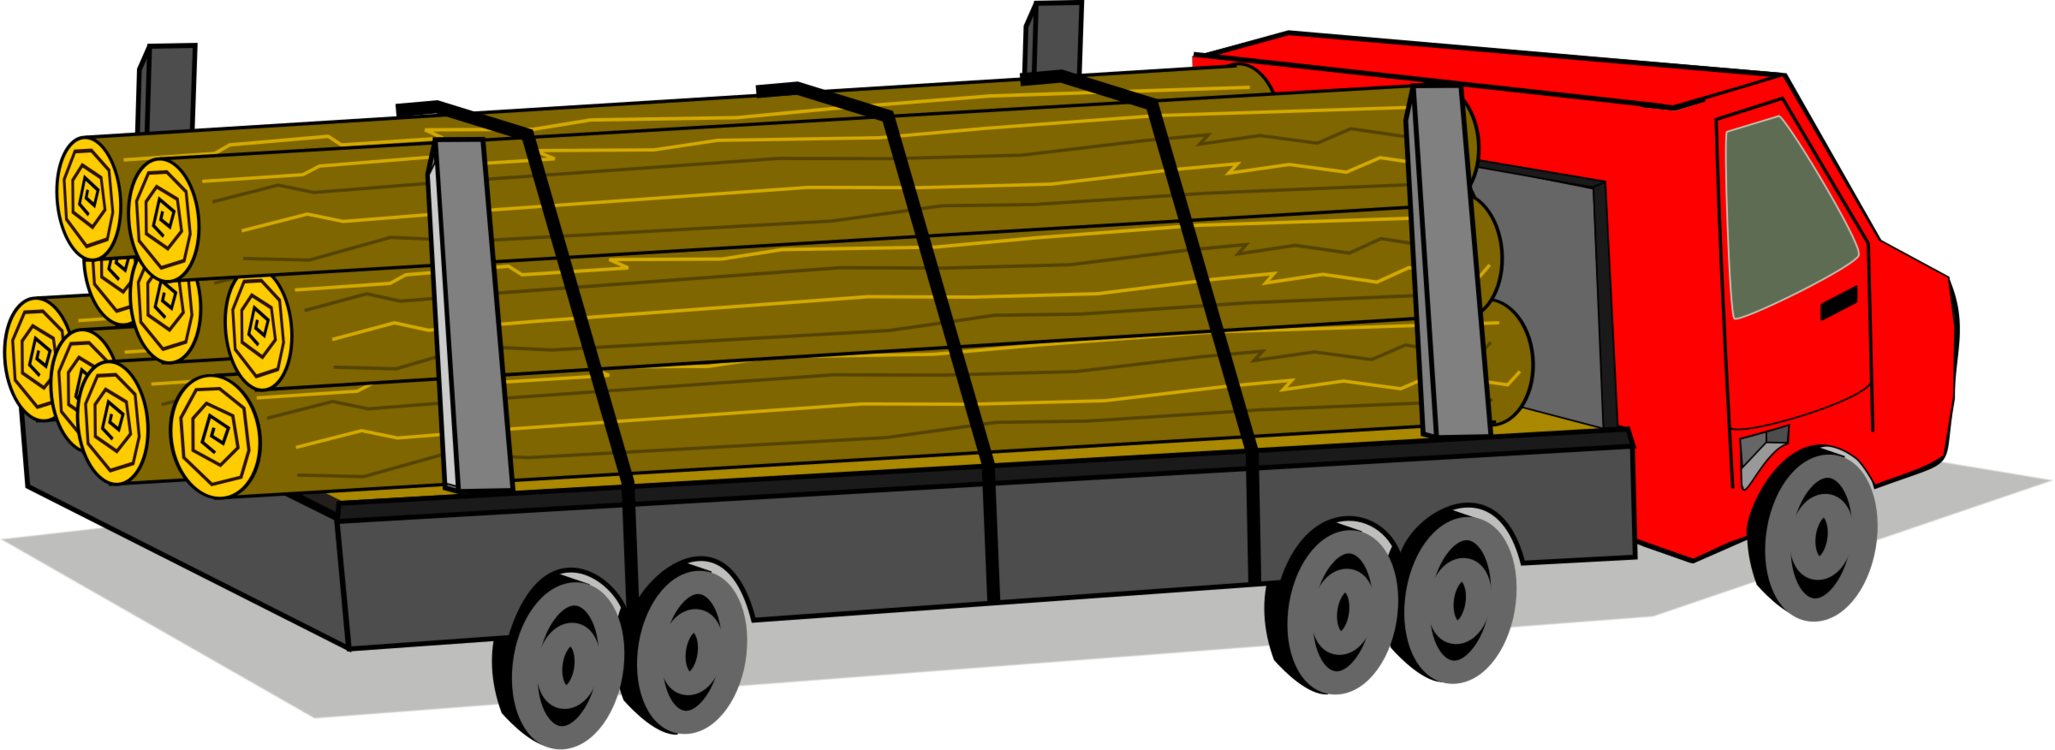 Грузовичок грузов. Мультяшный грузовик. Грузовик с грузом для детей. Грузовик иллюстрация. Грузовичок перевозки.